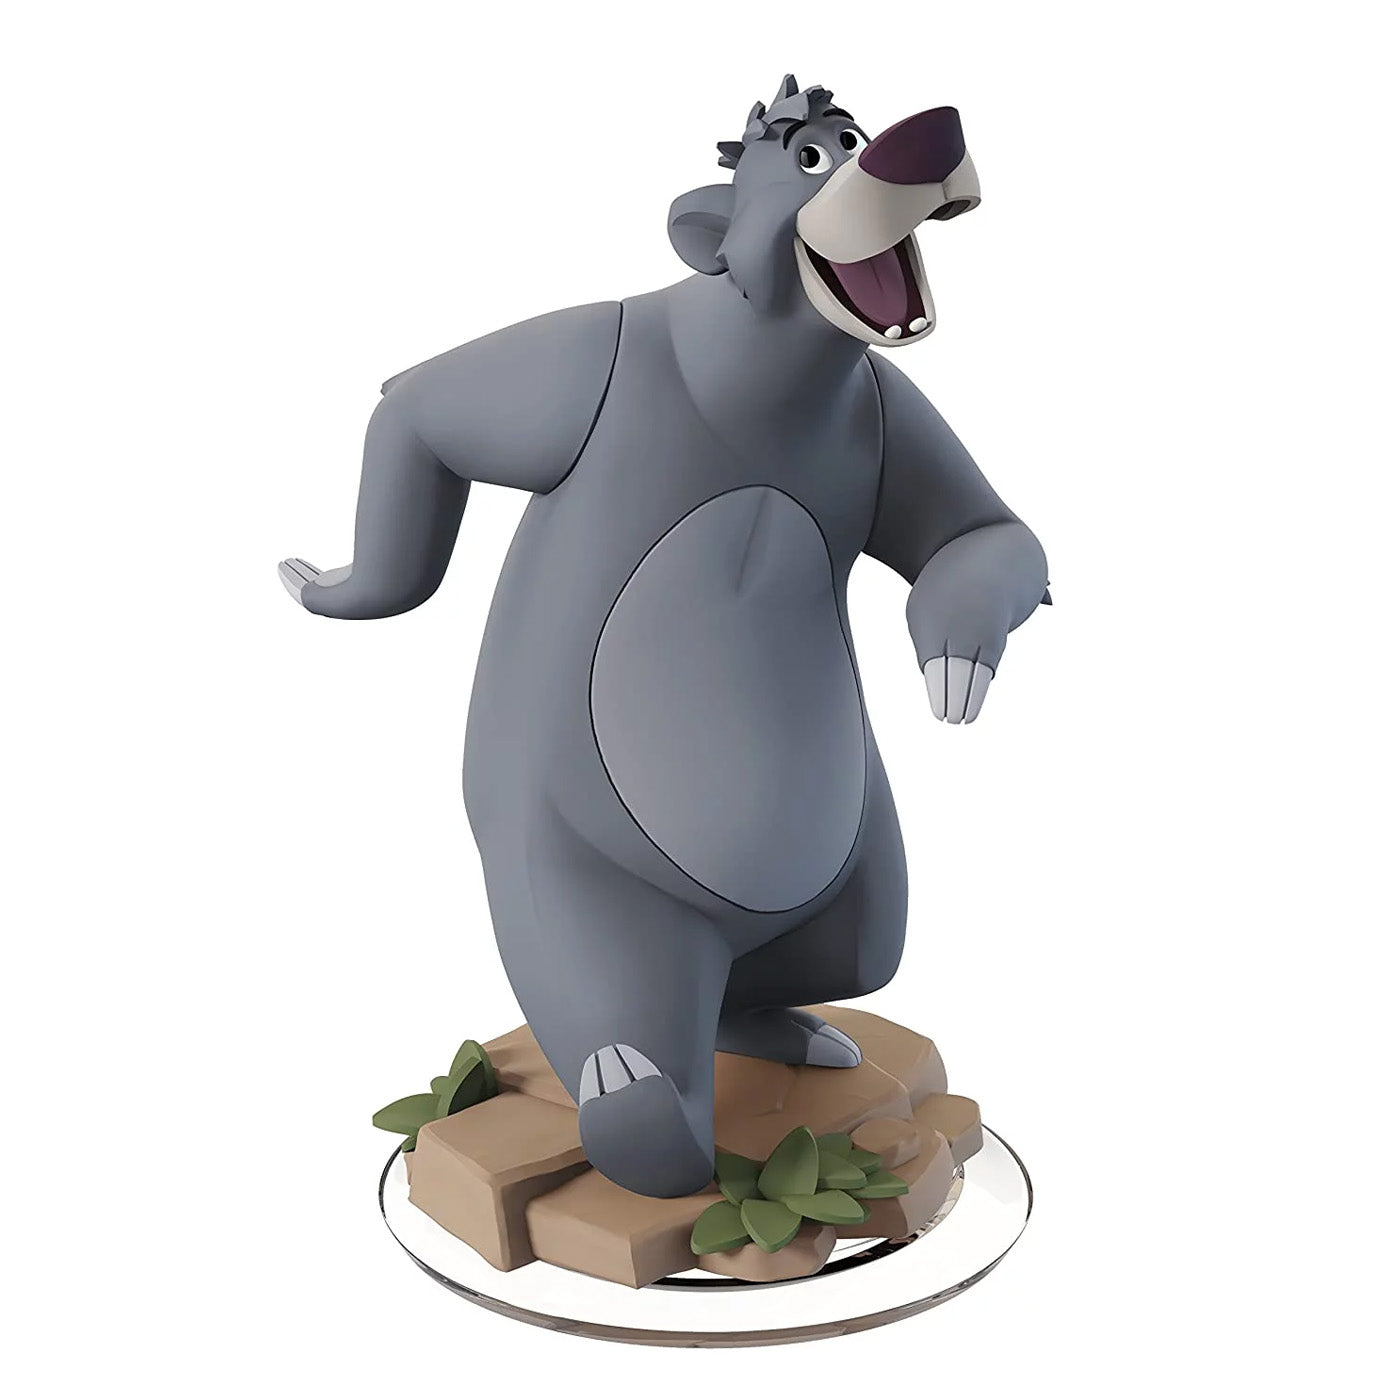 Disney Infinity 3.0 Character: Baloo